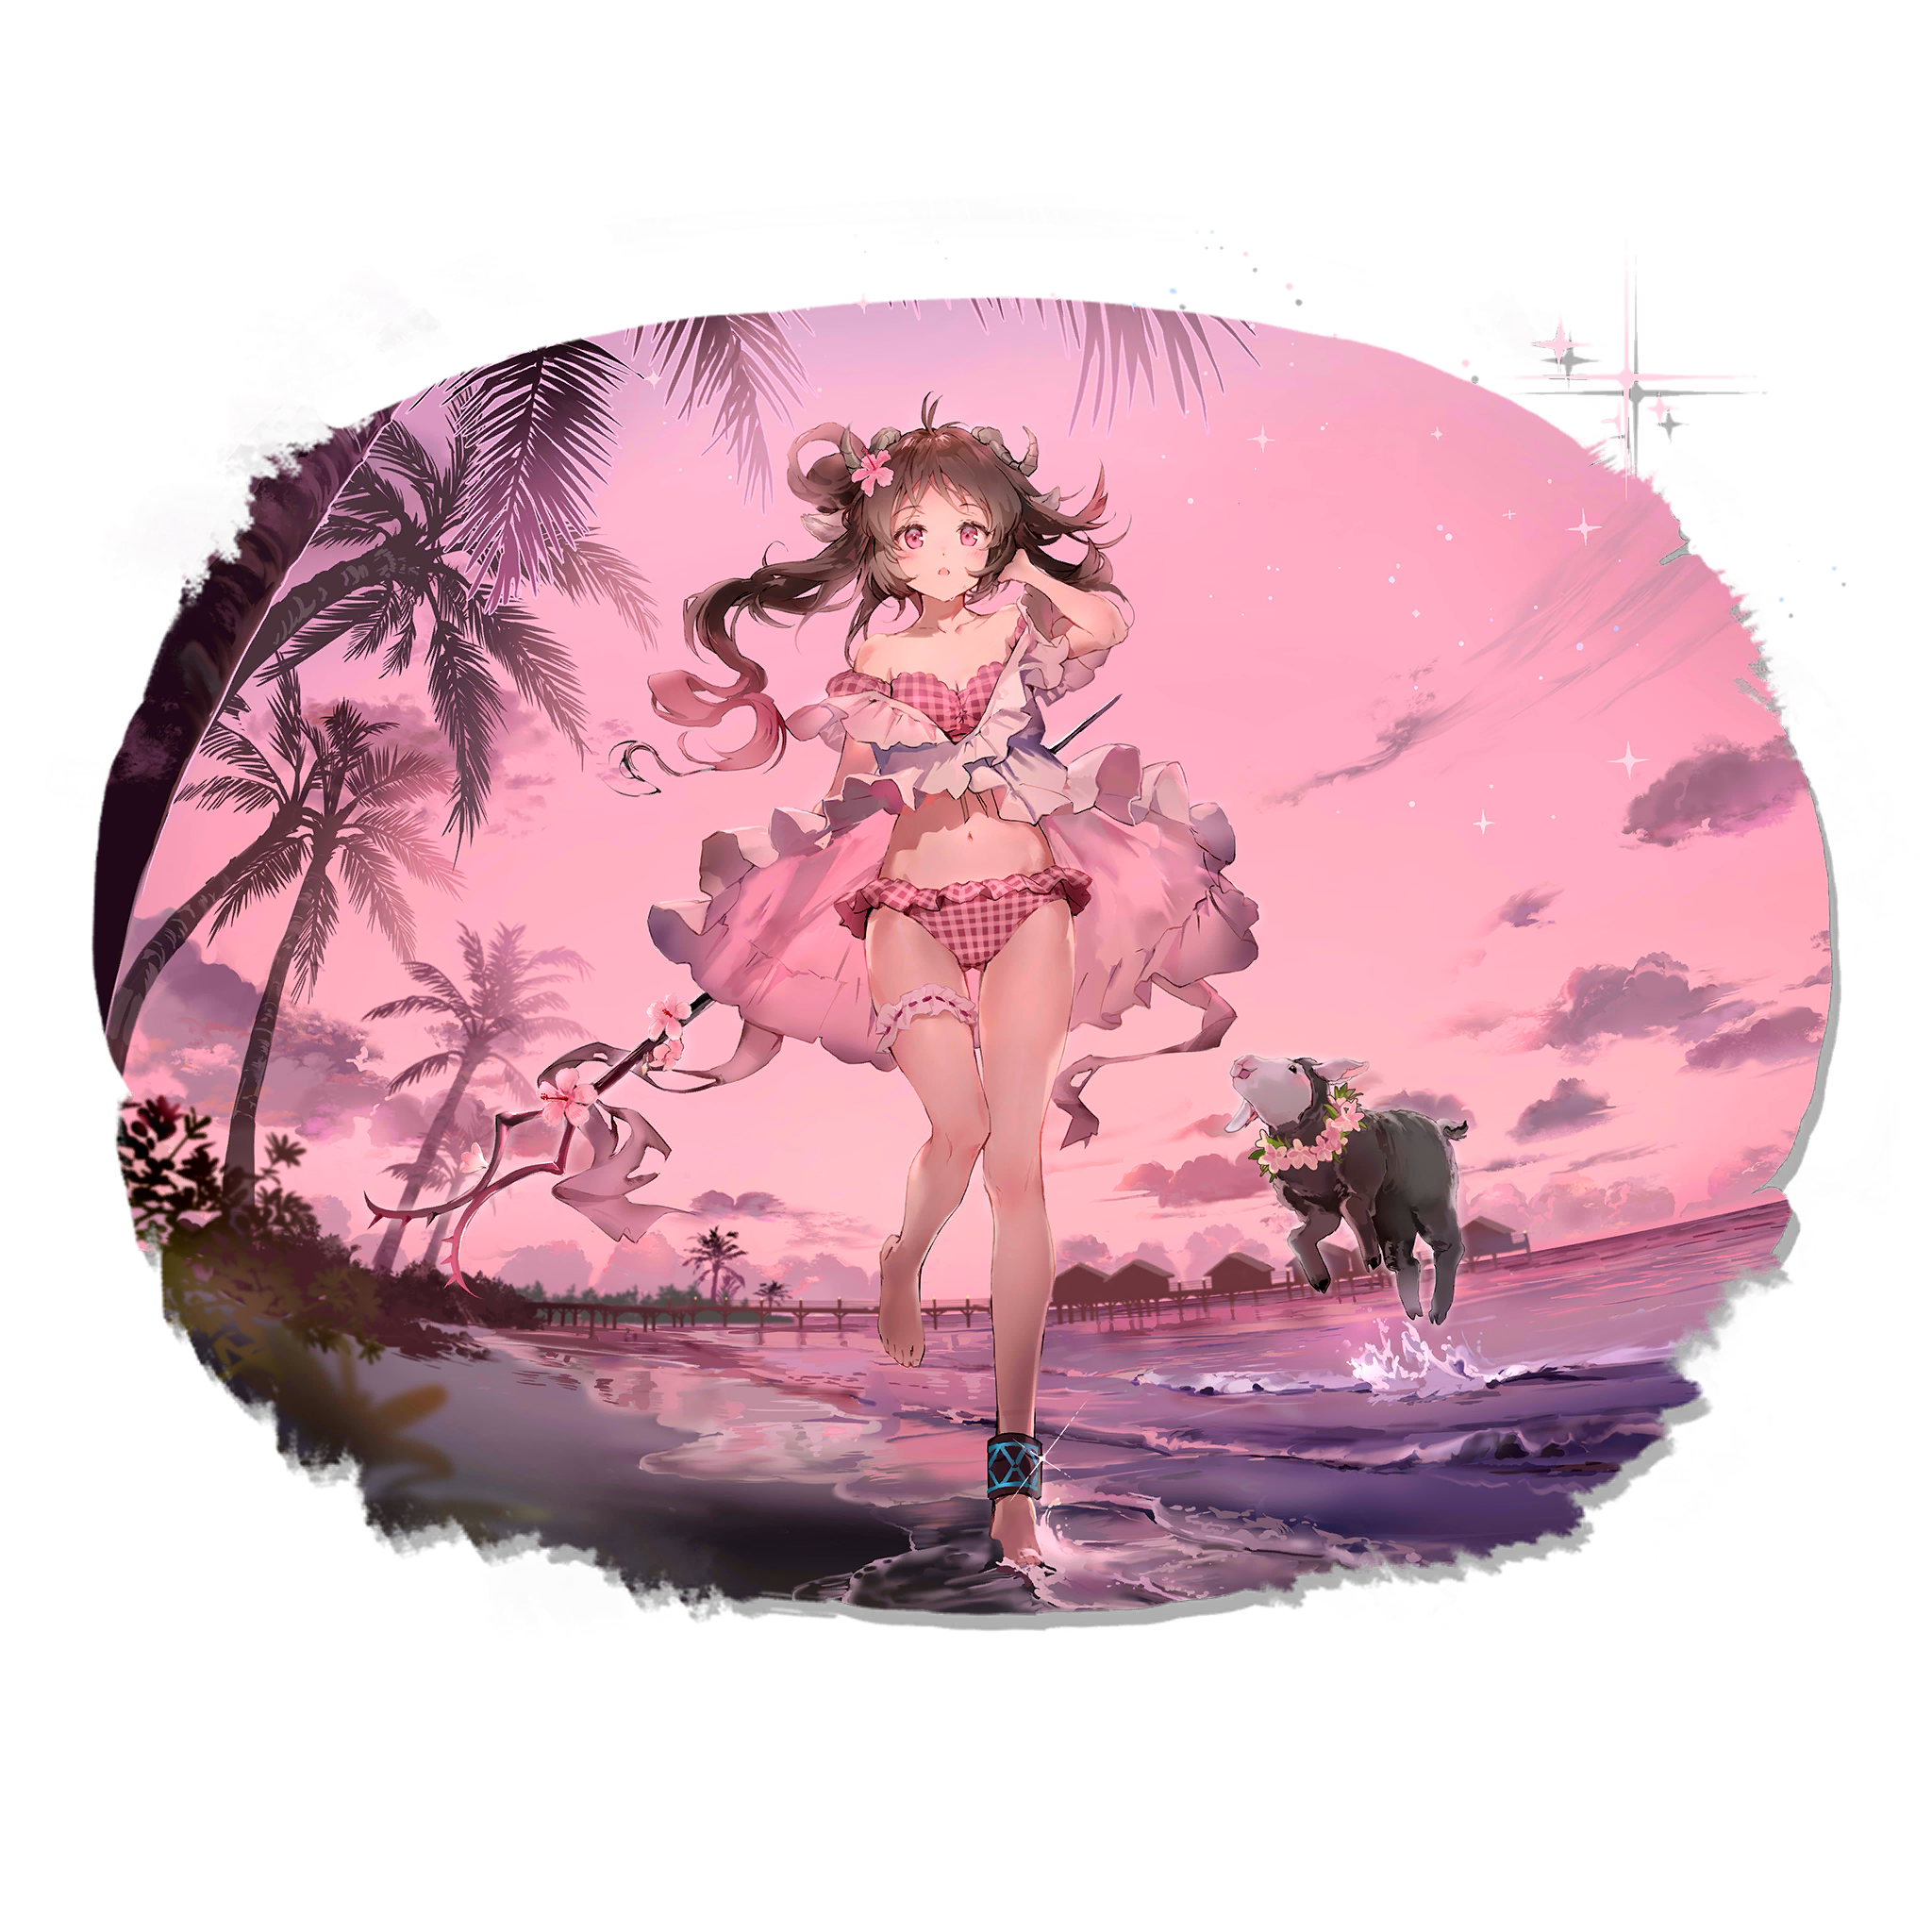 Anime 2048x2048 Arknights anime anime girls bra panties pink eyes brunette flower in hair horns dress open dress